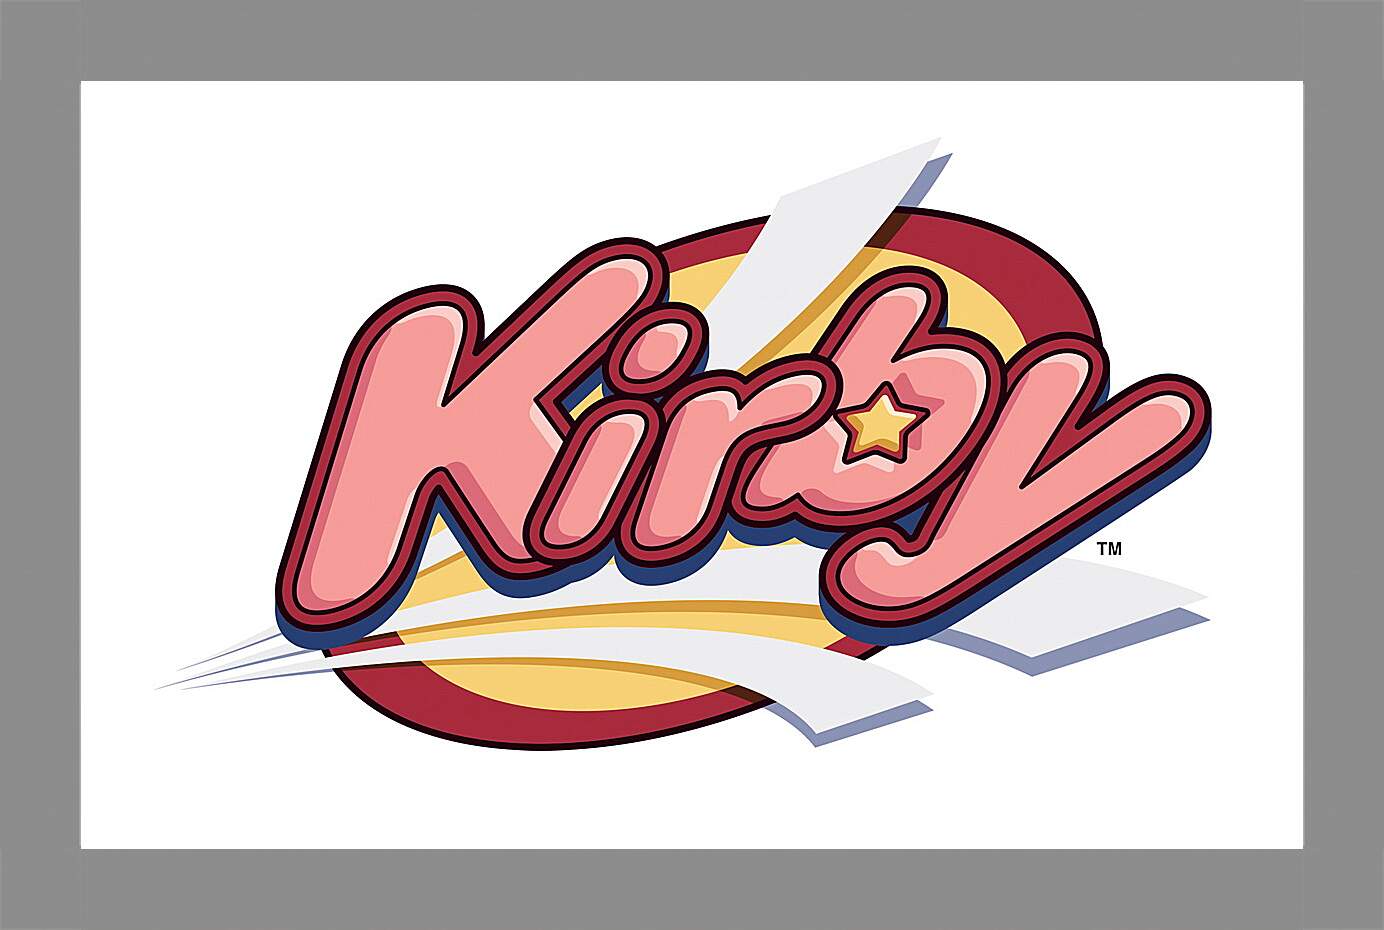 Картина в раме - Kirby
